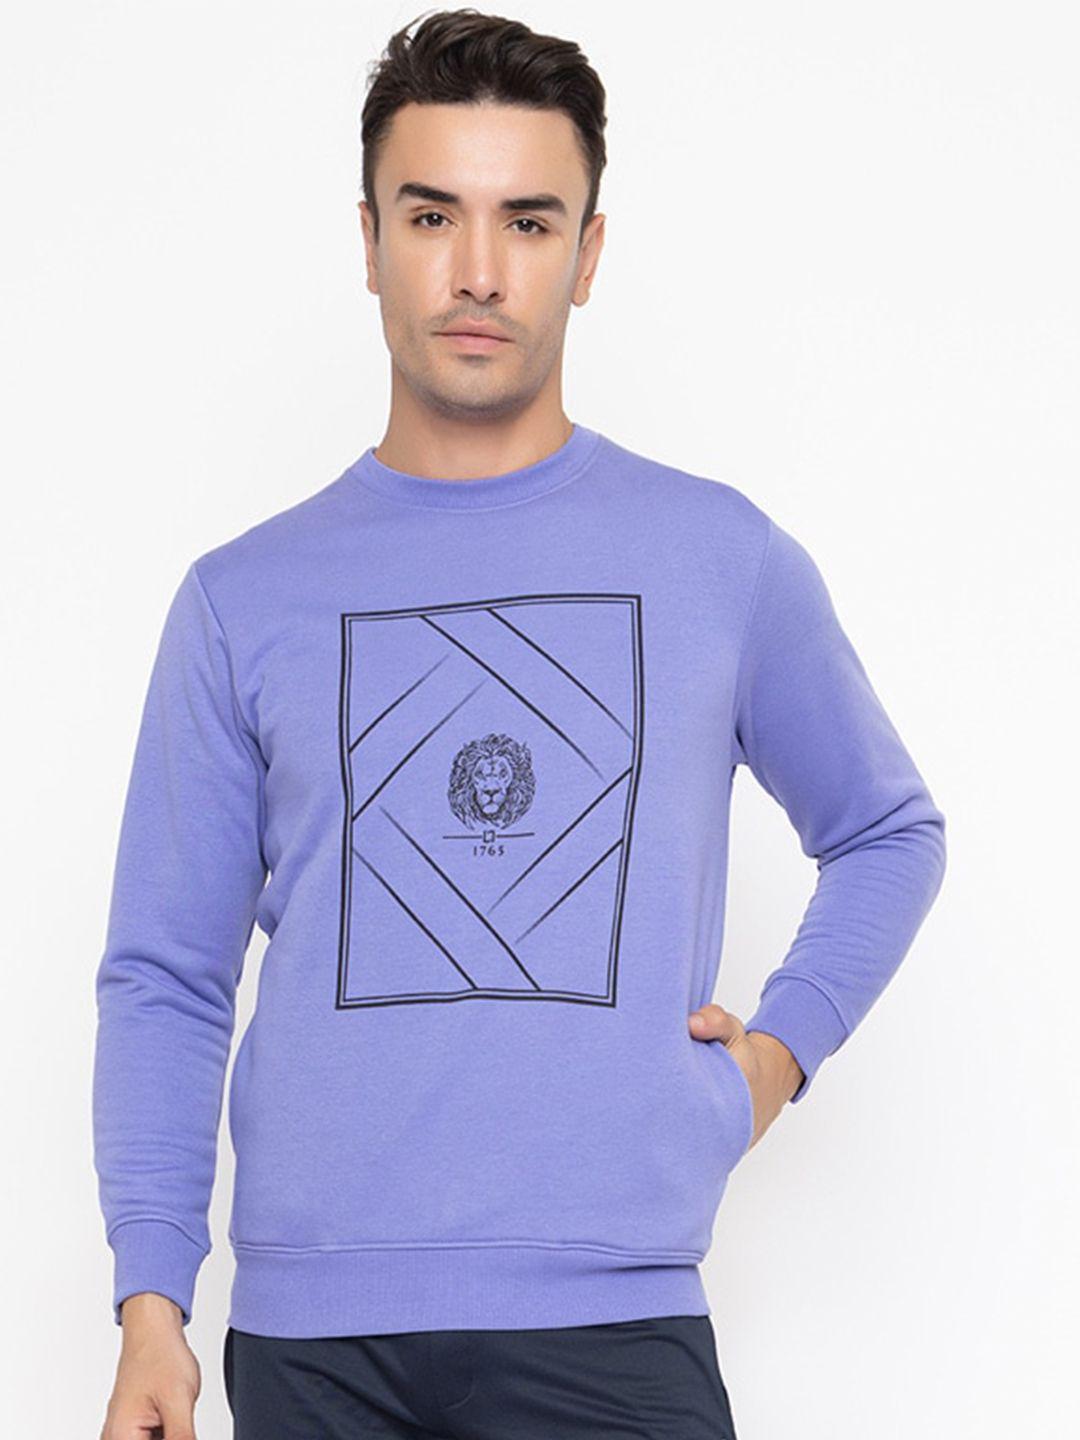 armisto men purple printed sweatshirt